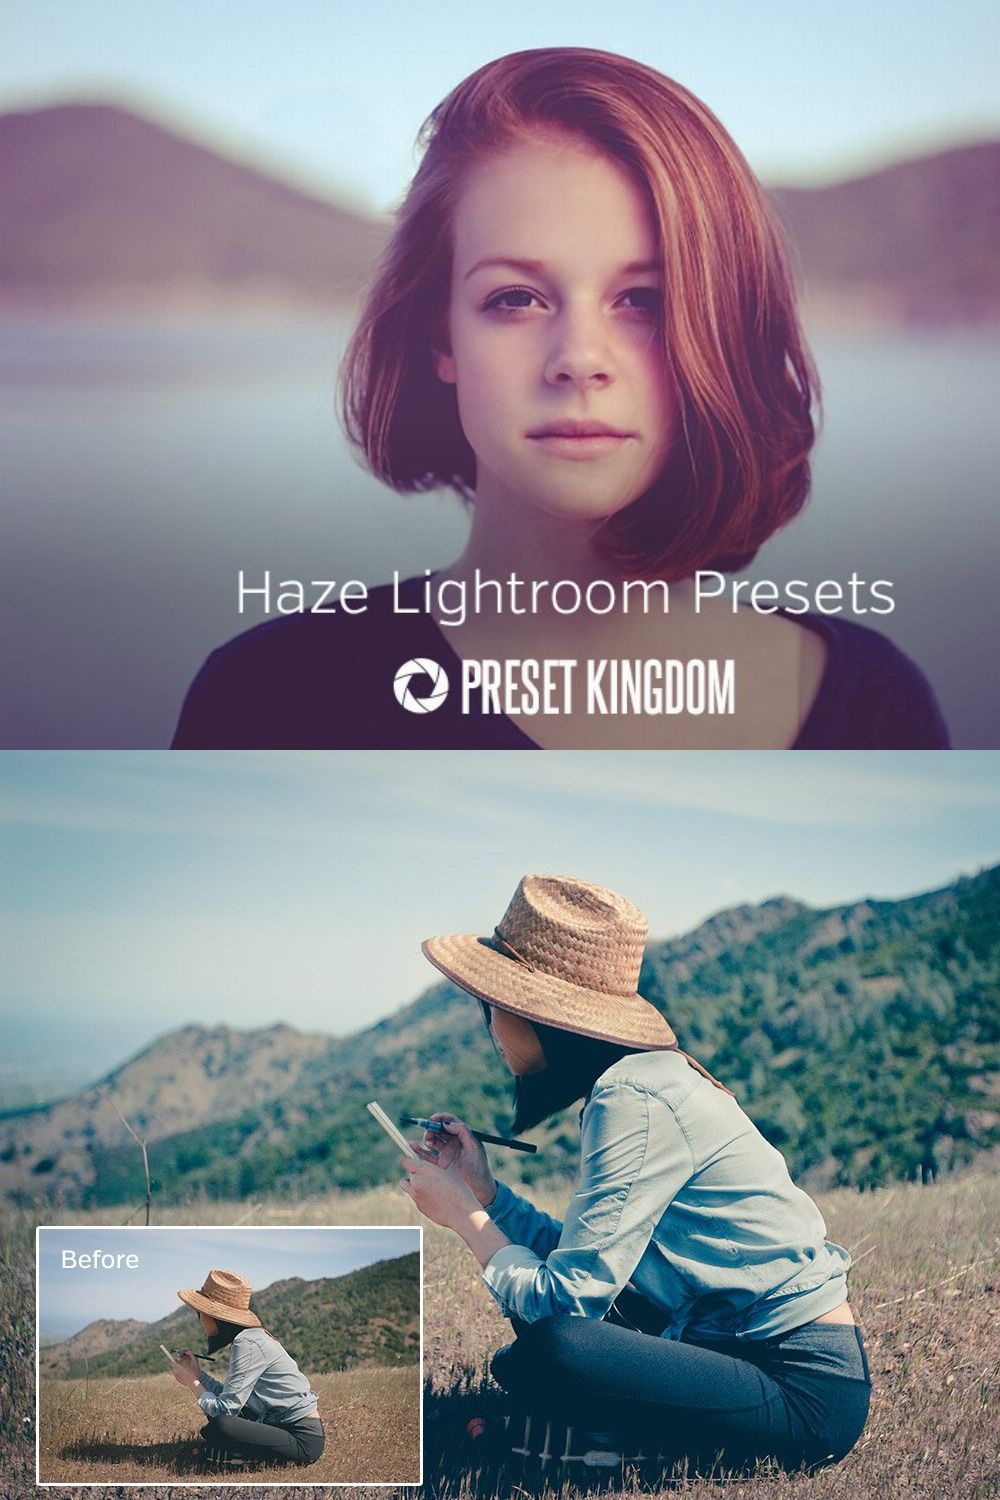 Haze Lightroom Presets pinterest preview image.